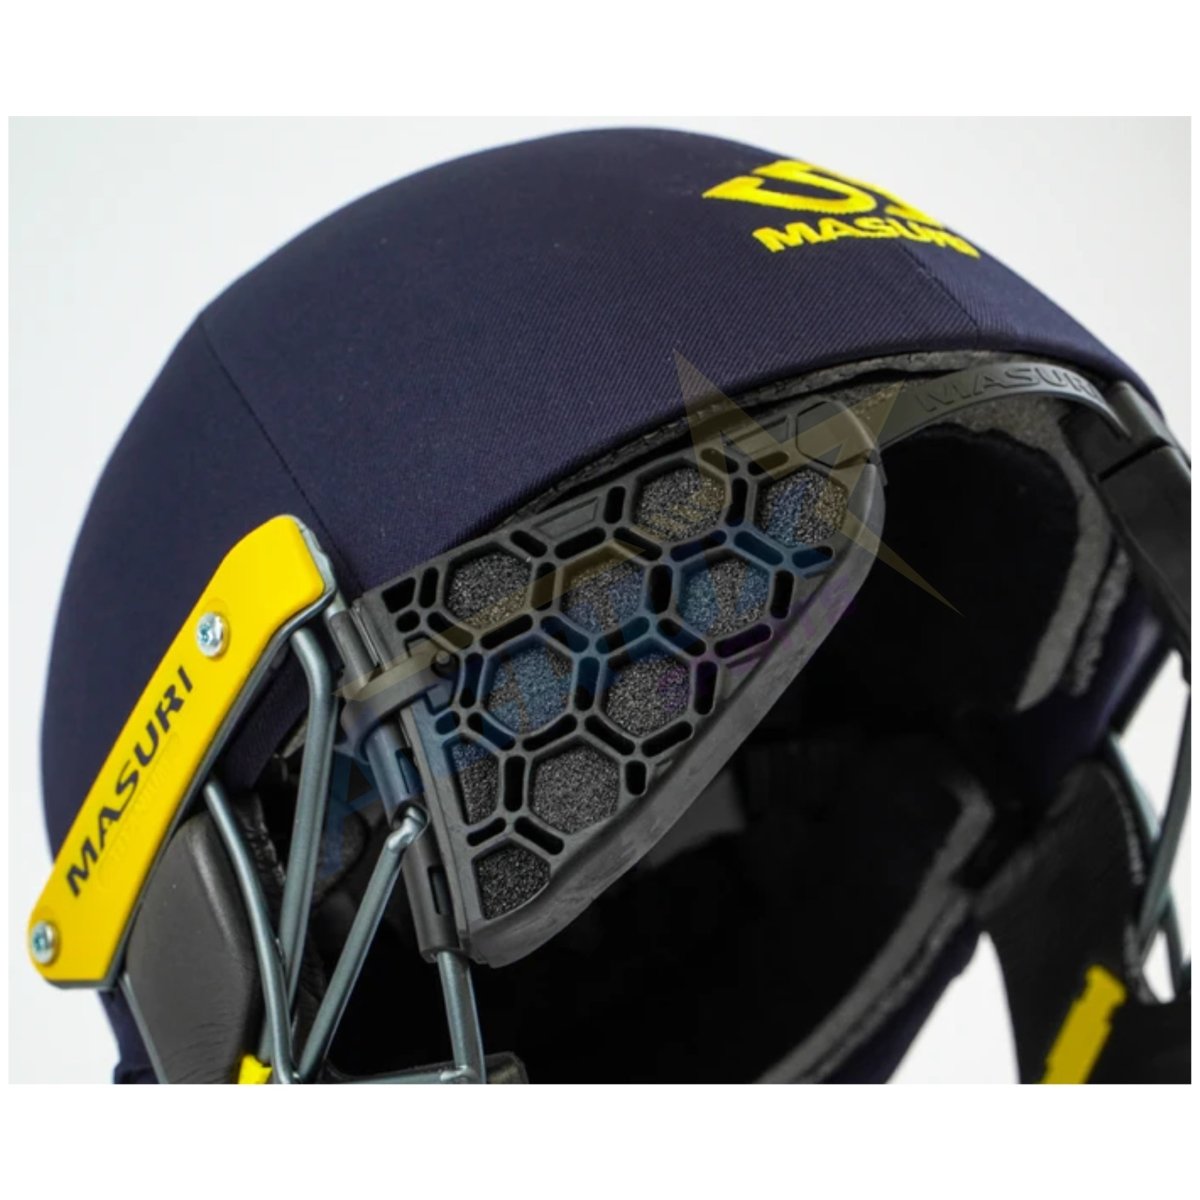 Masuri T Line Titanium Senior Cricket Helmet